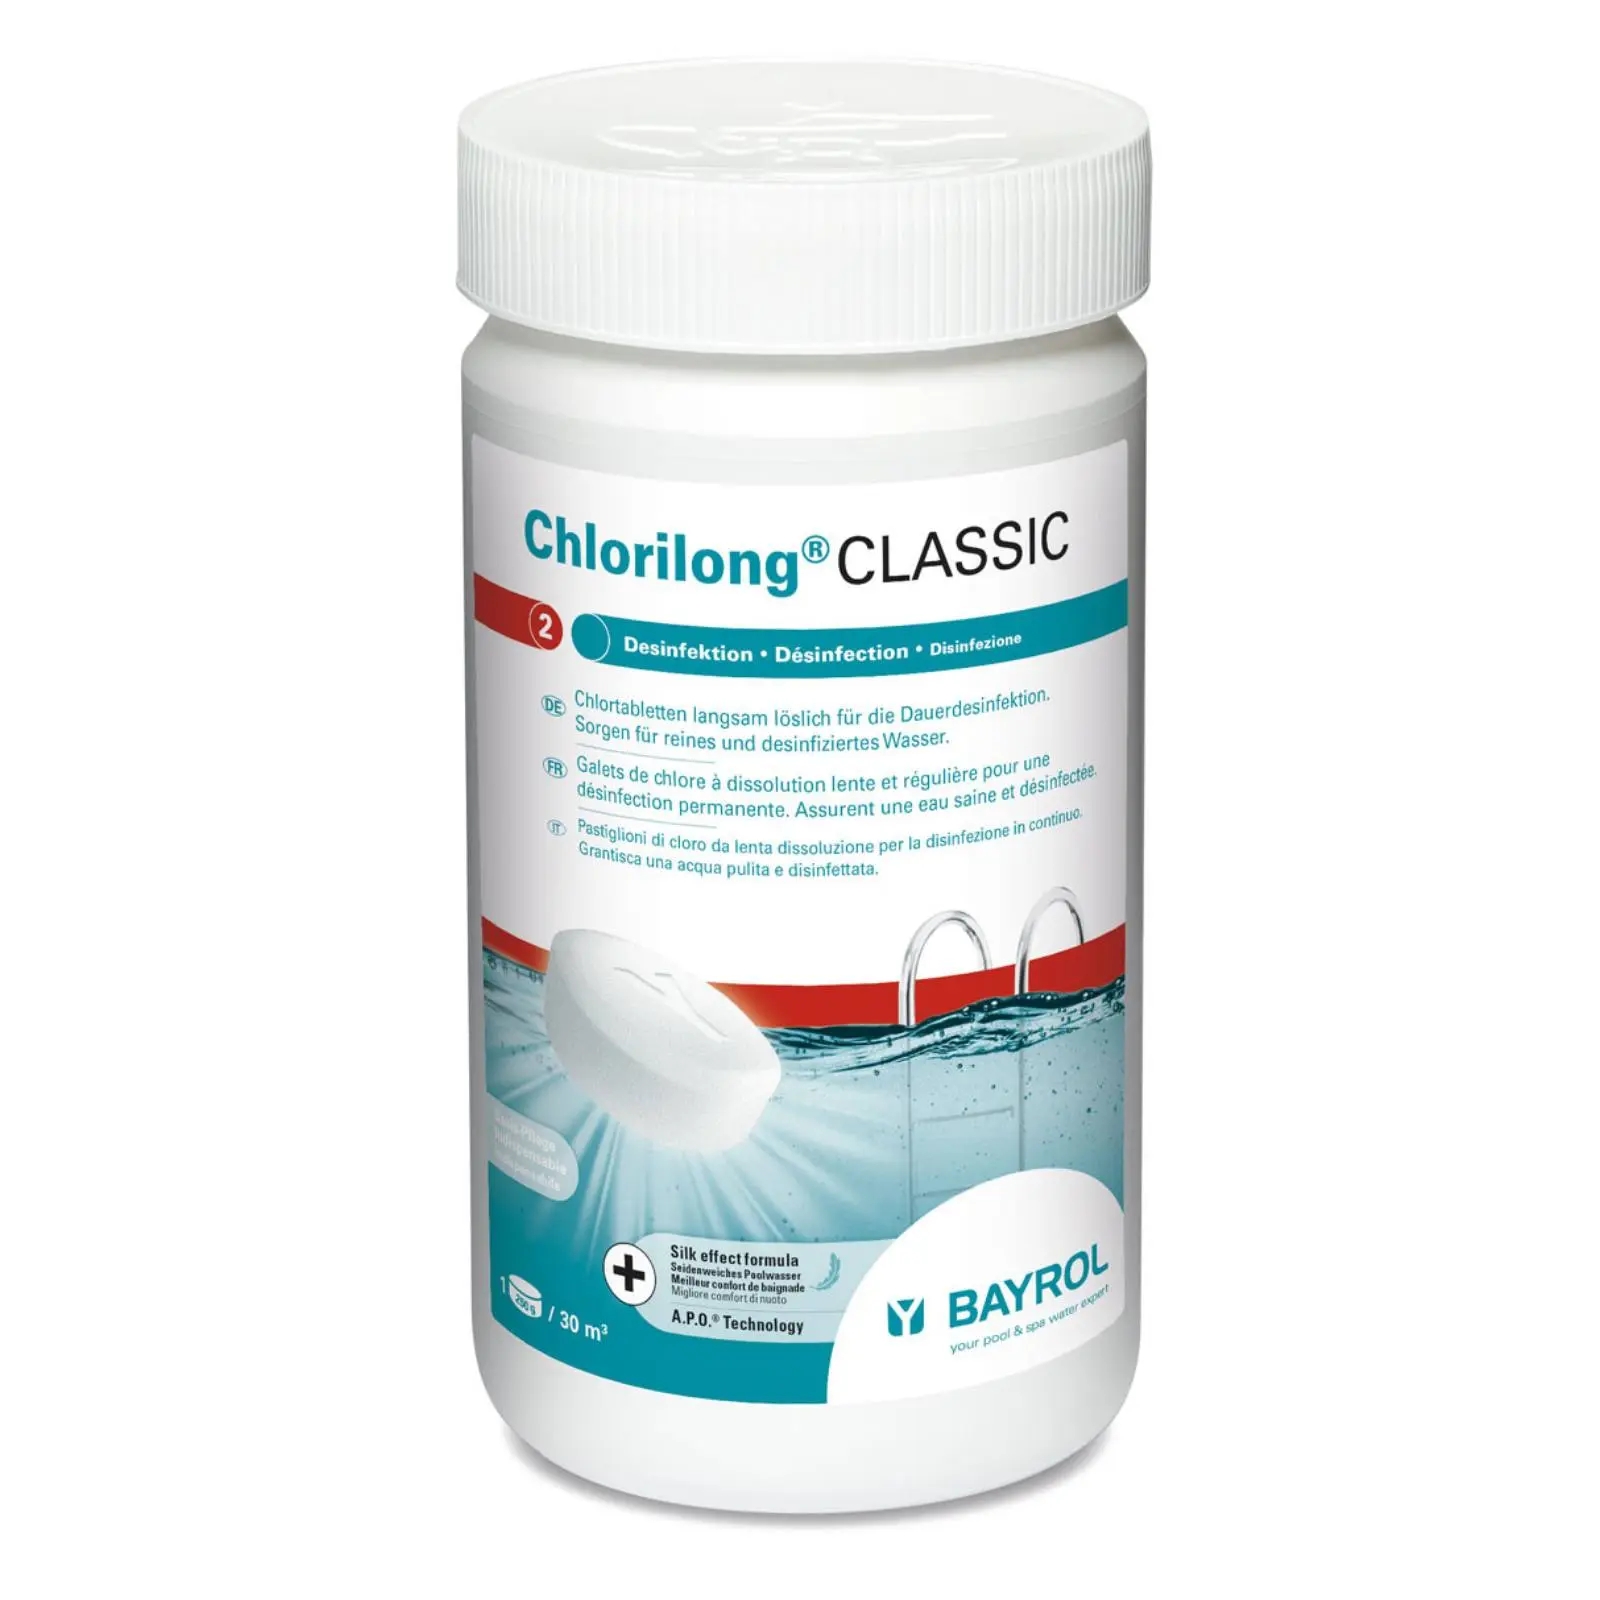 Bayrol Chlorilong Classic 1,25kg